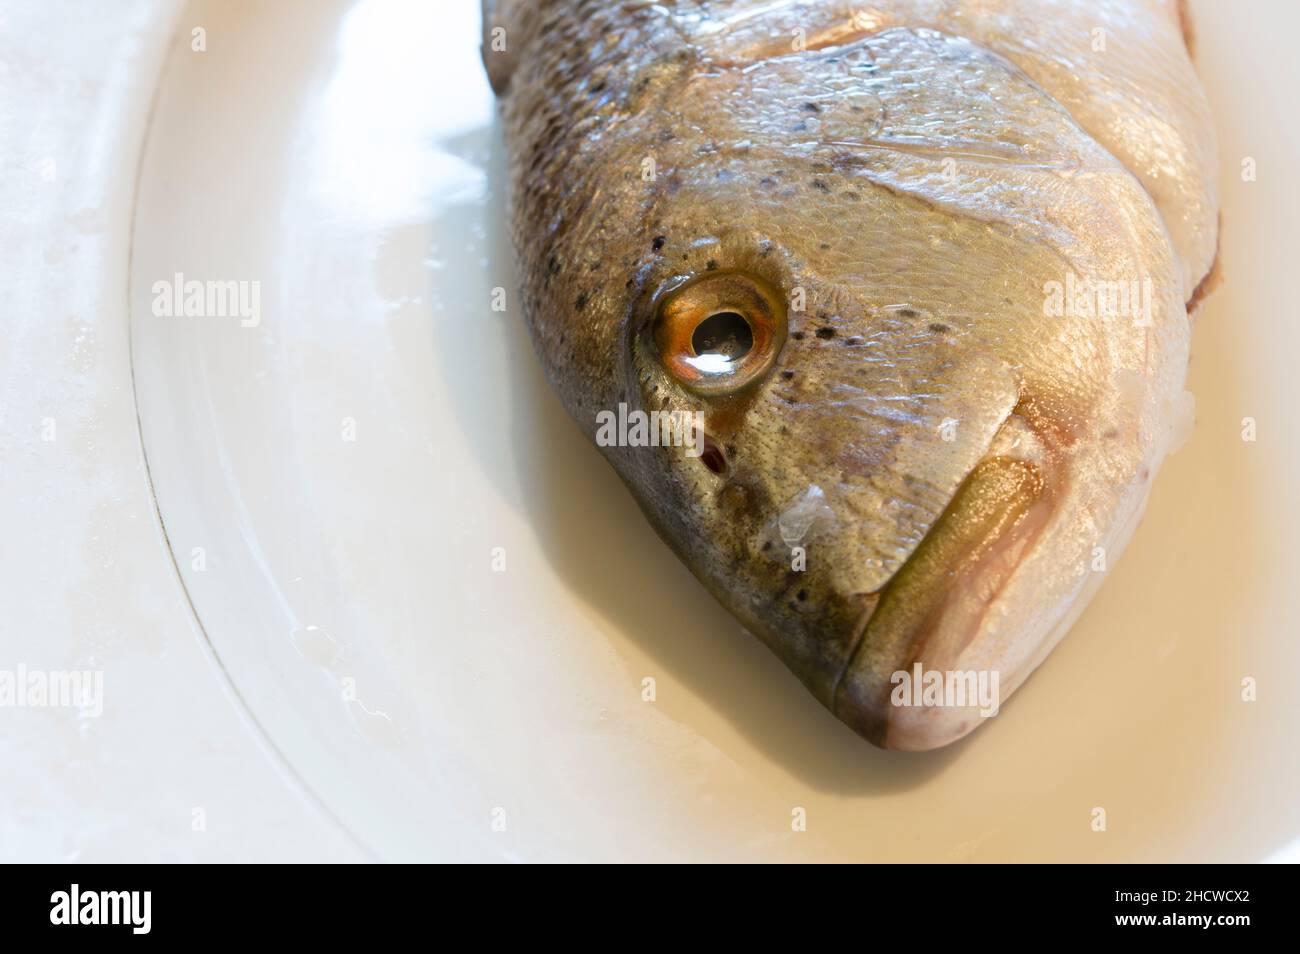 Kopf von rohem Salzwasserfisch Dentex Dentex, gemeiner Dentex auf einem weißen Teller, roher Fisch aus der Adria, dalmatinische Küche Stockfoto